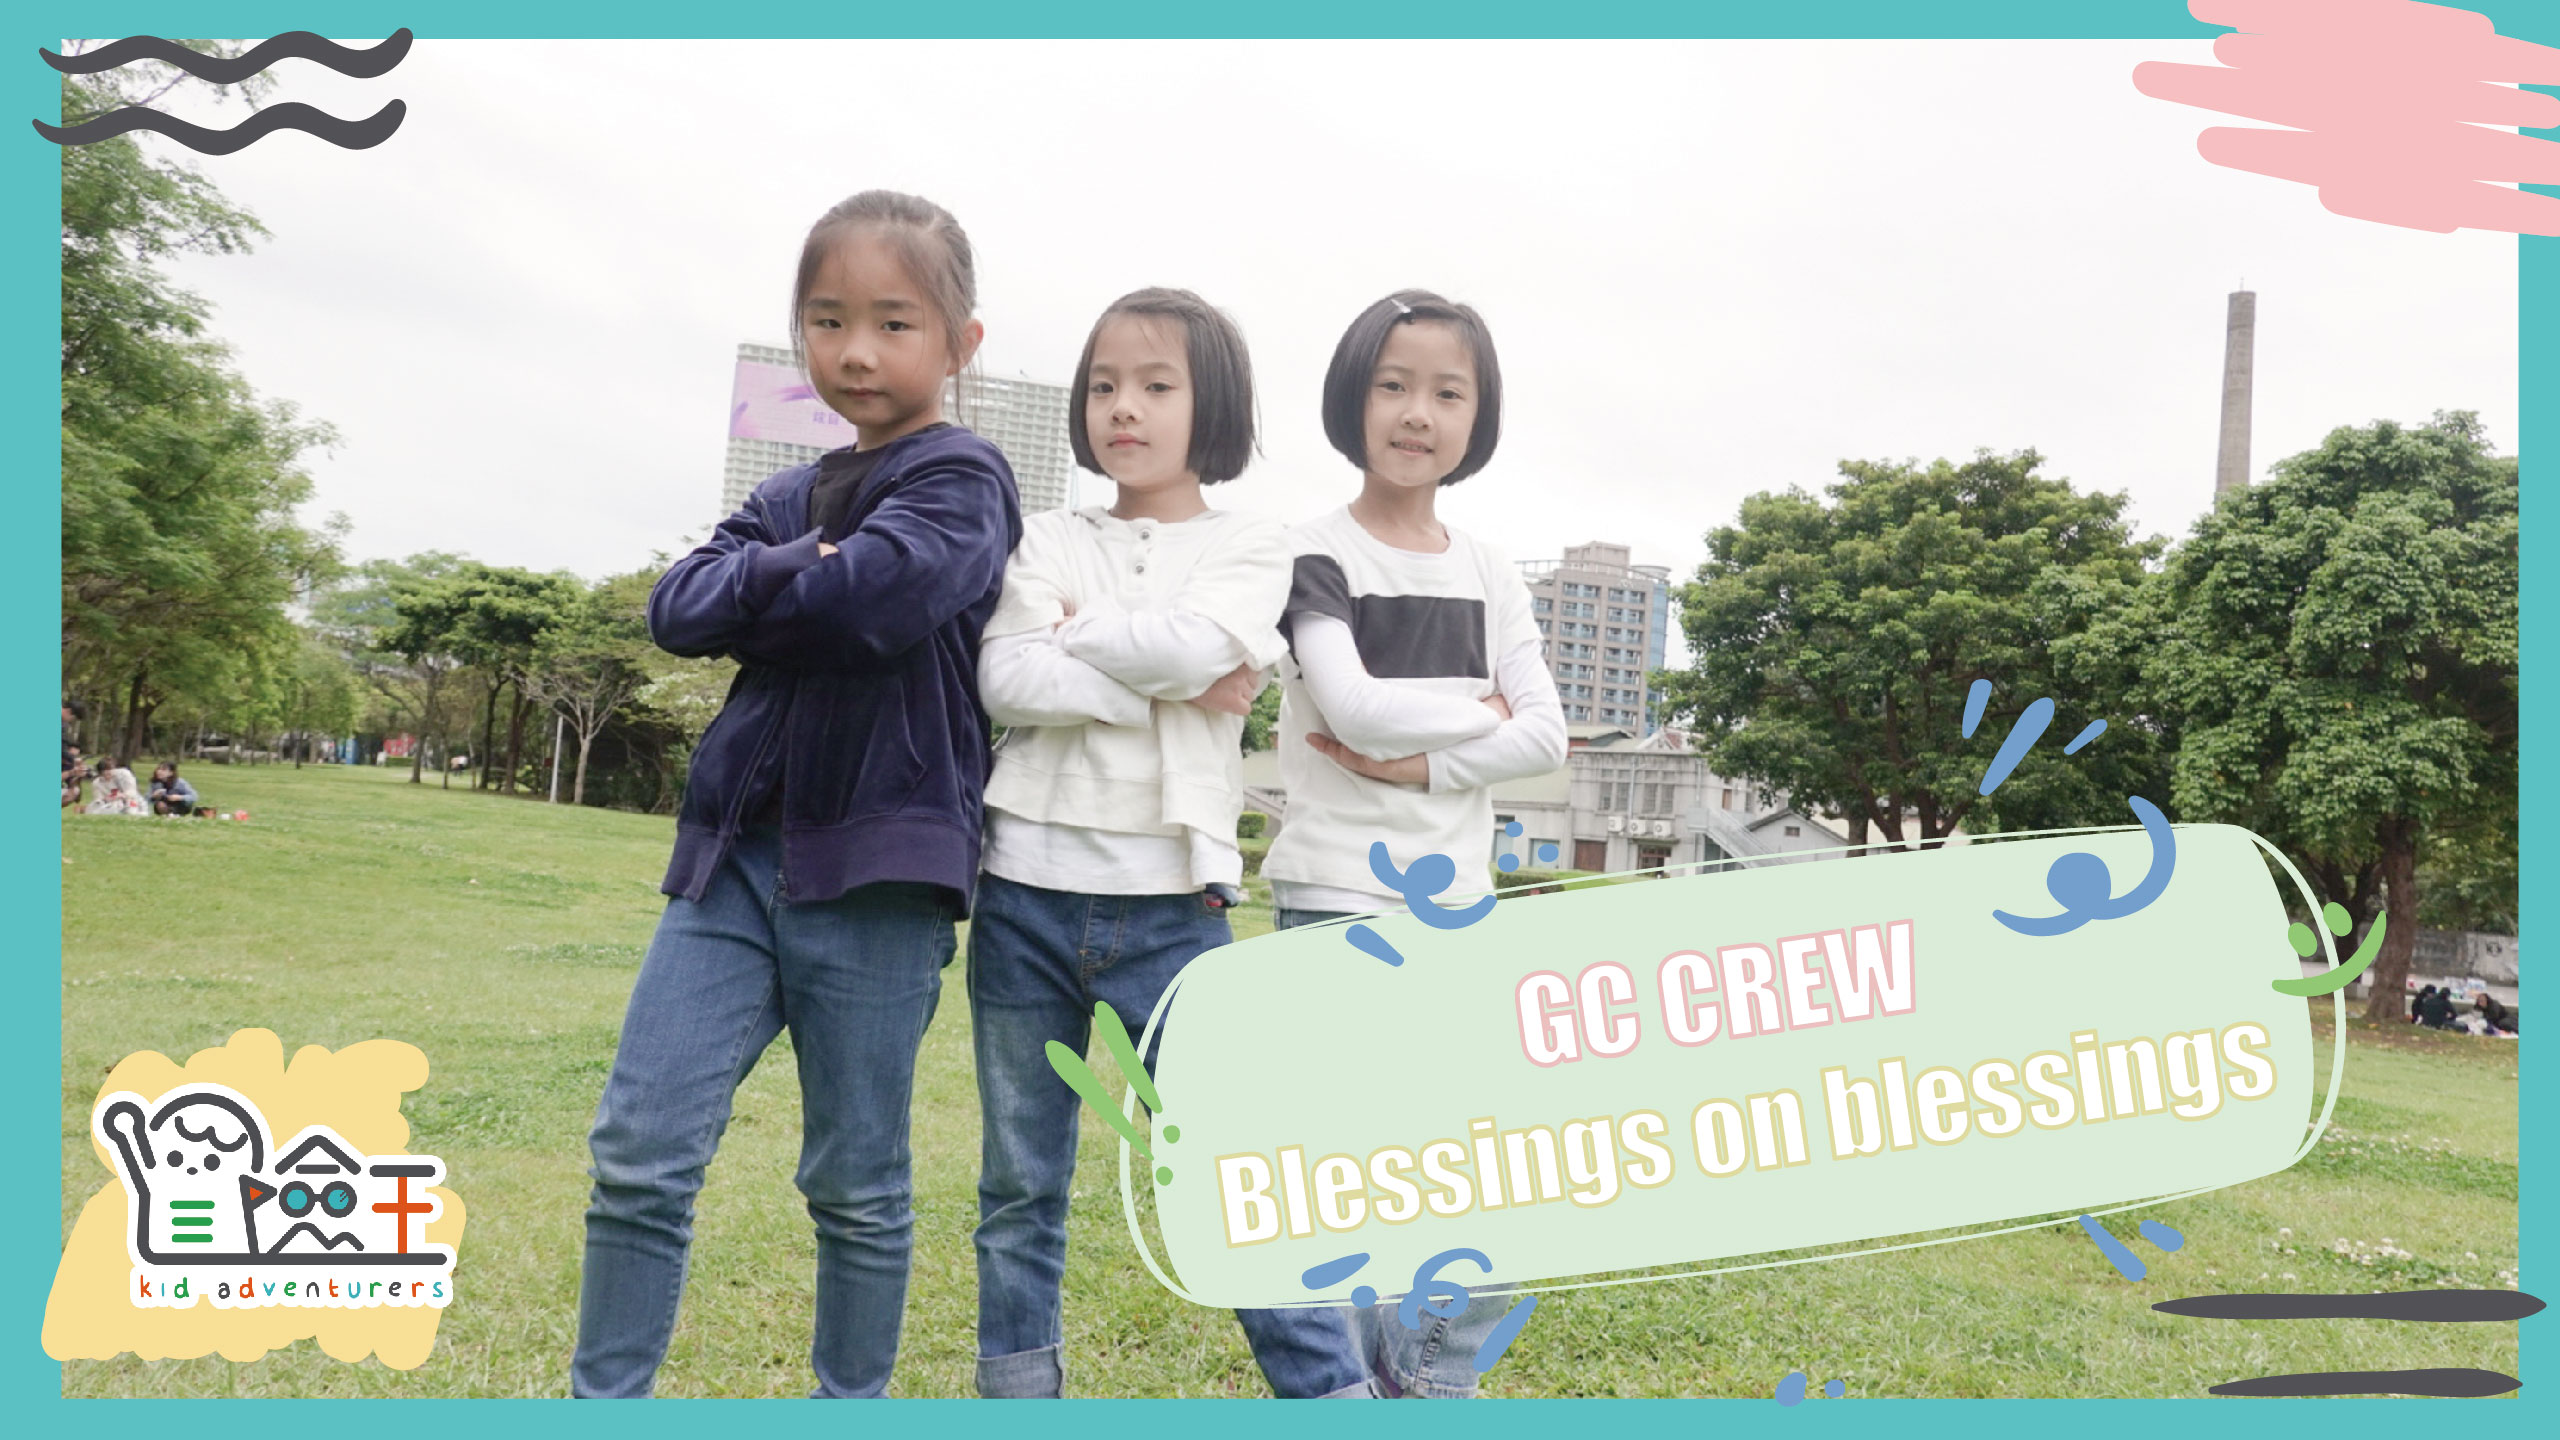 【精彩節目】冒險王兒童舞團 GC CREW | Blessings on blessings